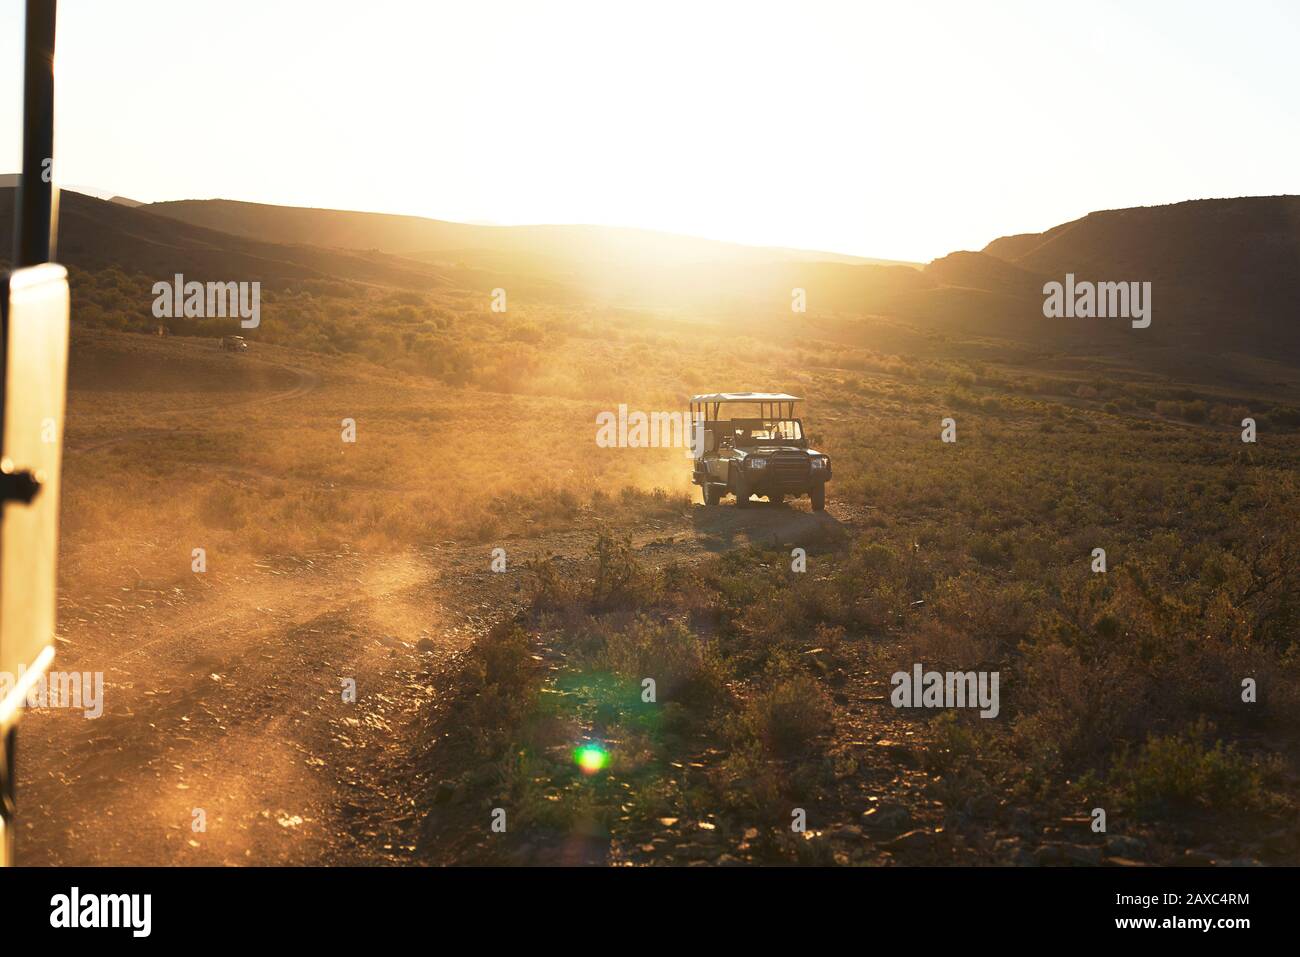 Safari vehículo todoterreno en carretera en la soleada tierra de Sudáfrica Foto de stock